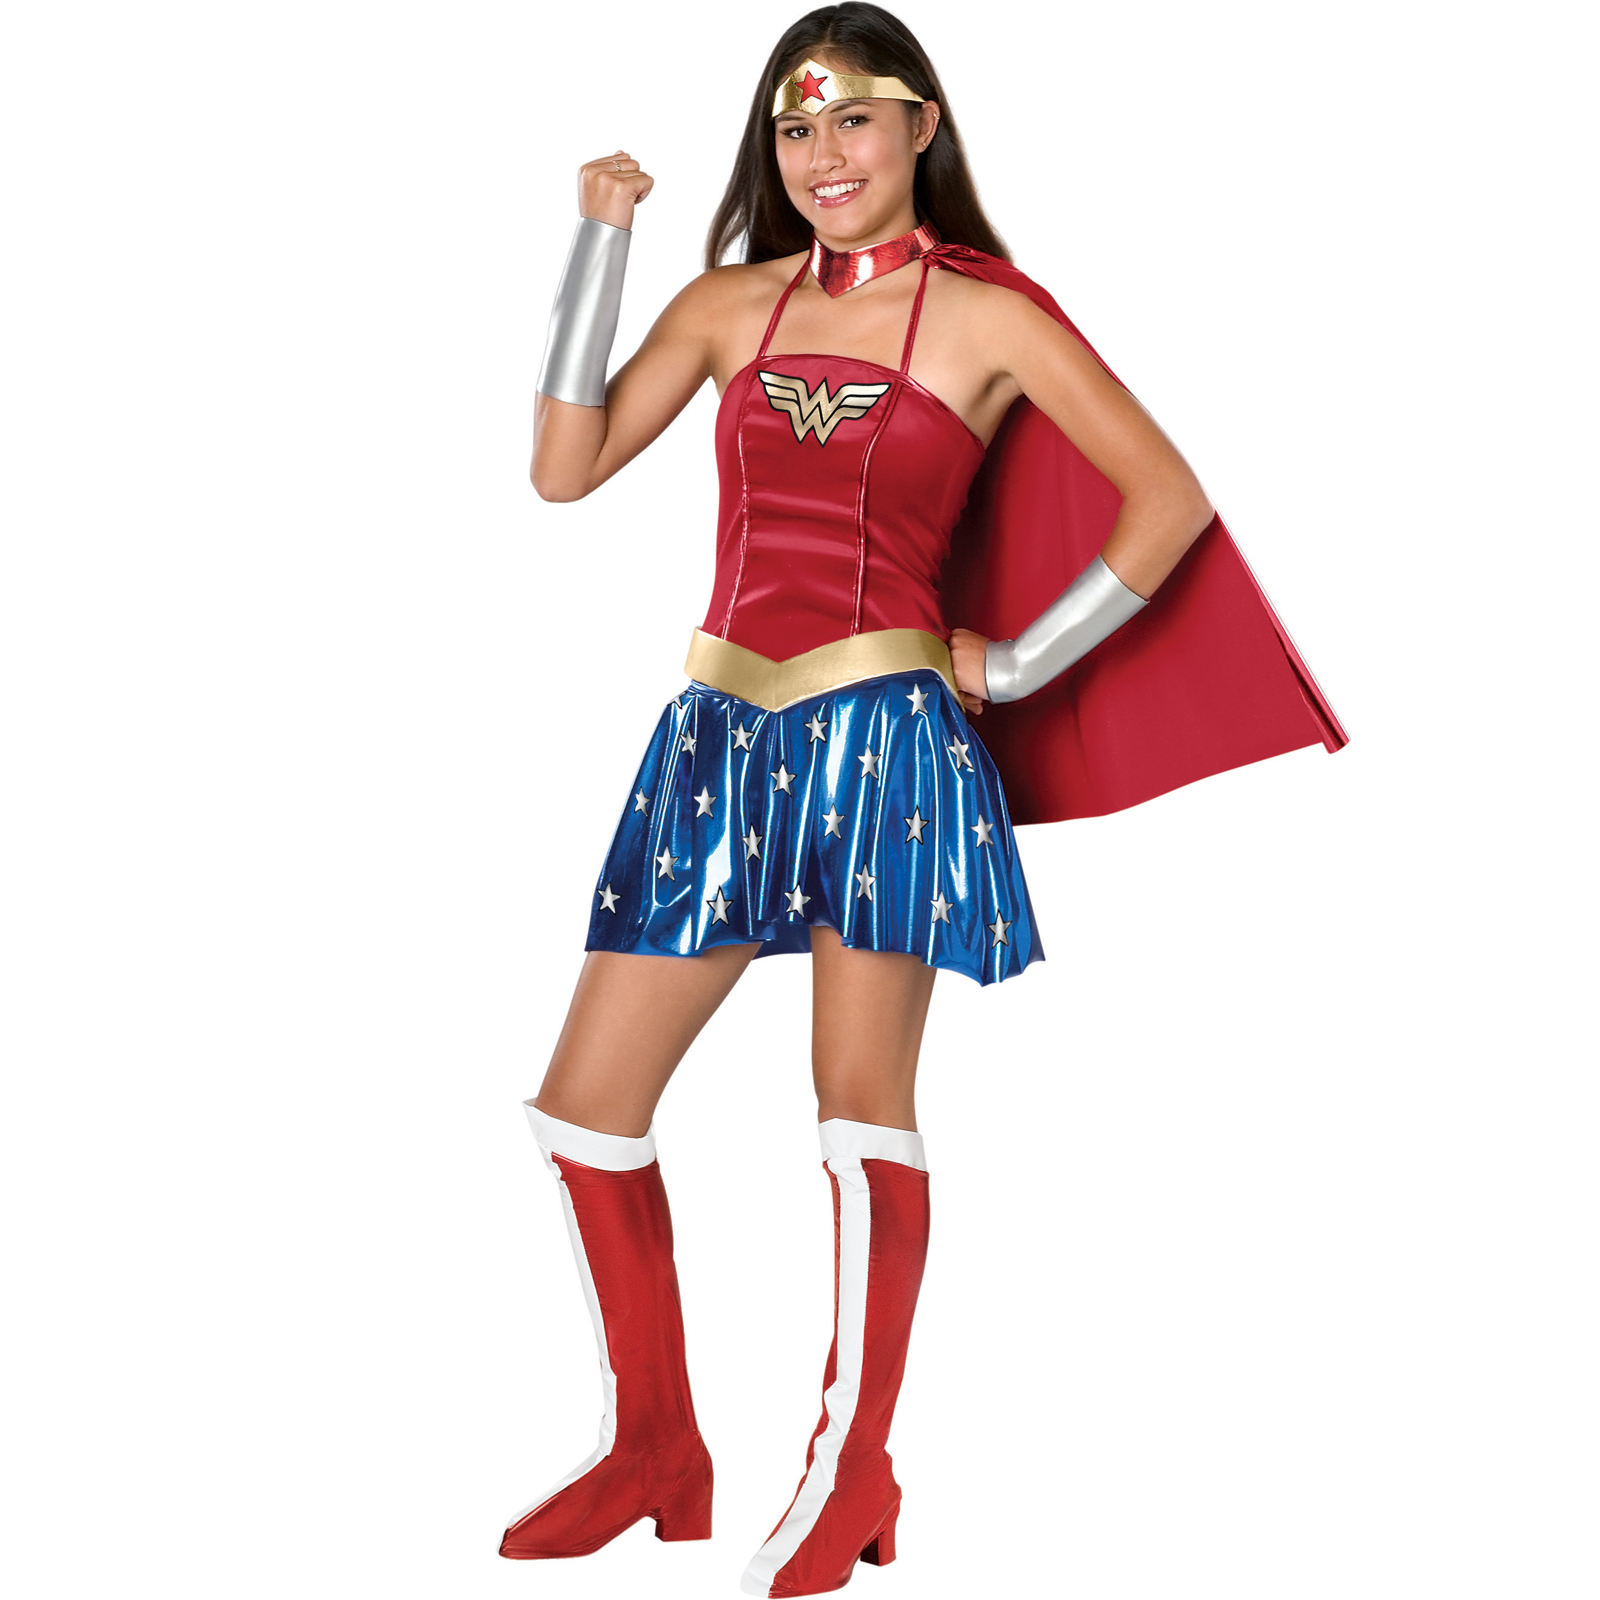 Licensed Teen Wonder Woman Costume 46